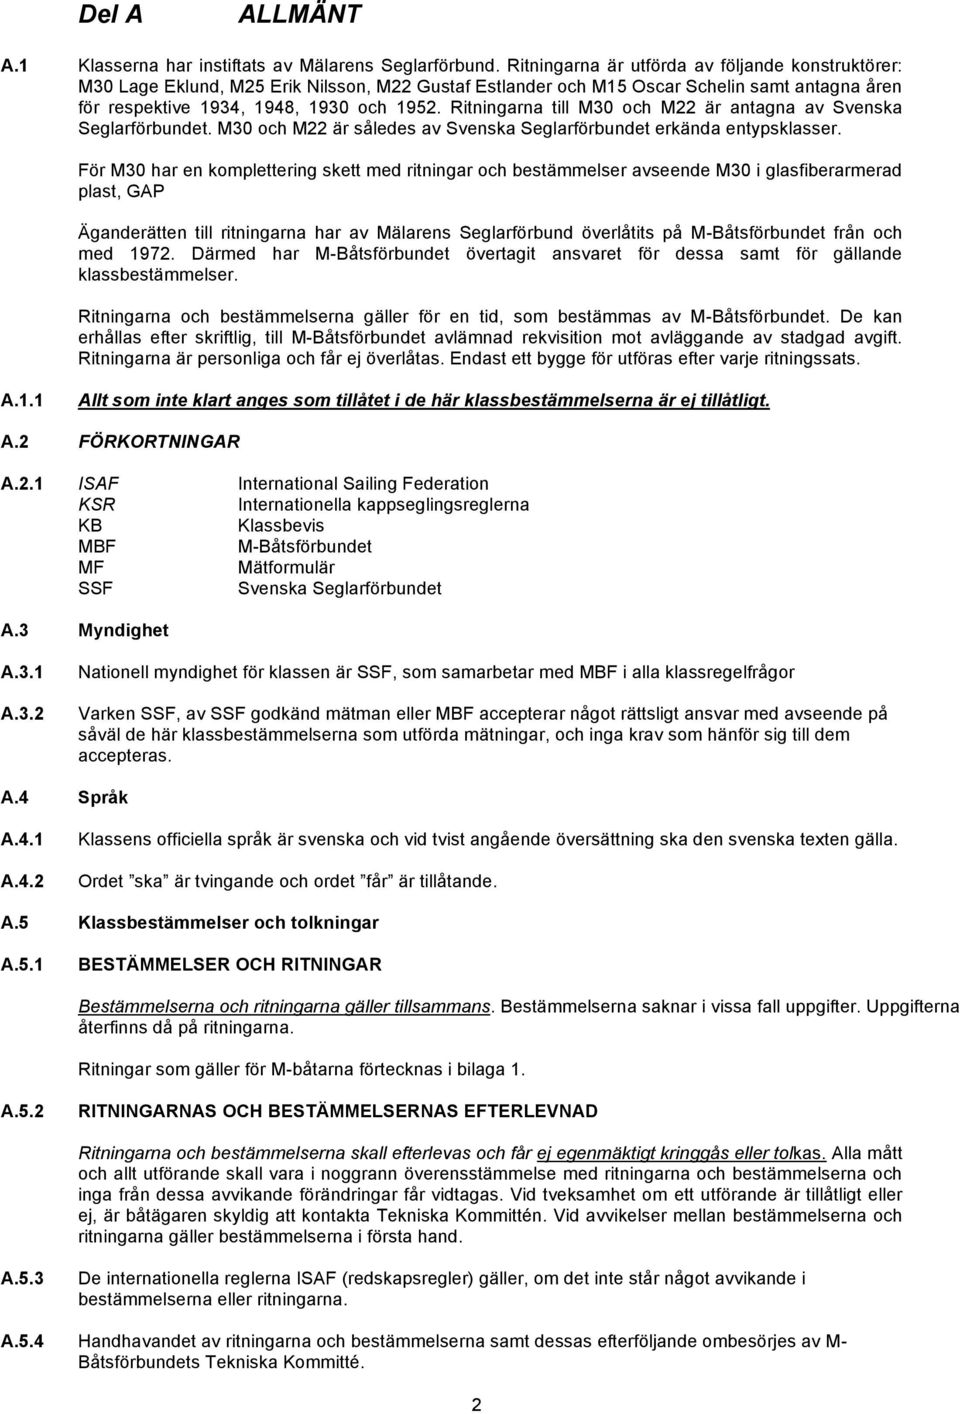 Ritningarna till M30 och M22 är antagna av Svenska Seglarförbundet. M30 och M22 är således av Svenska Seglarförbundet erkända entypsklasser.